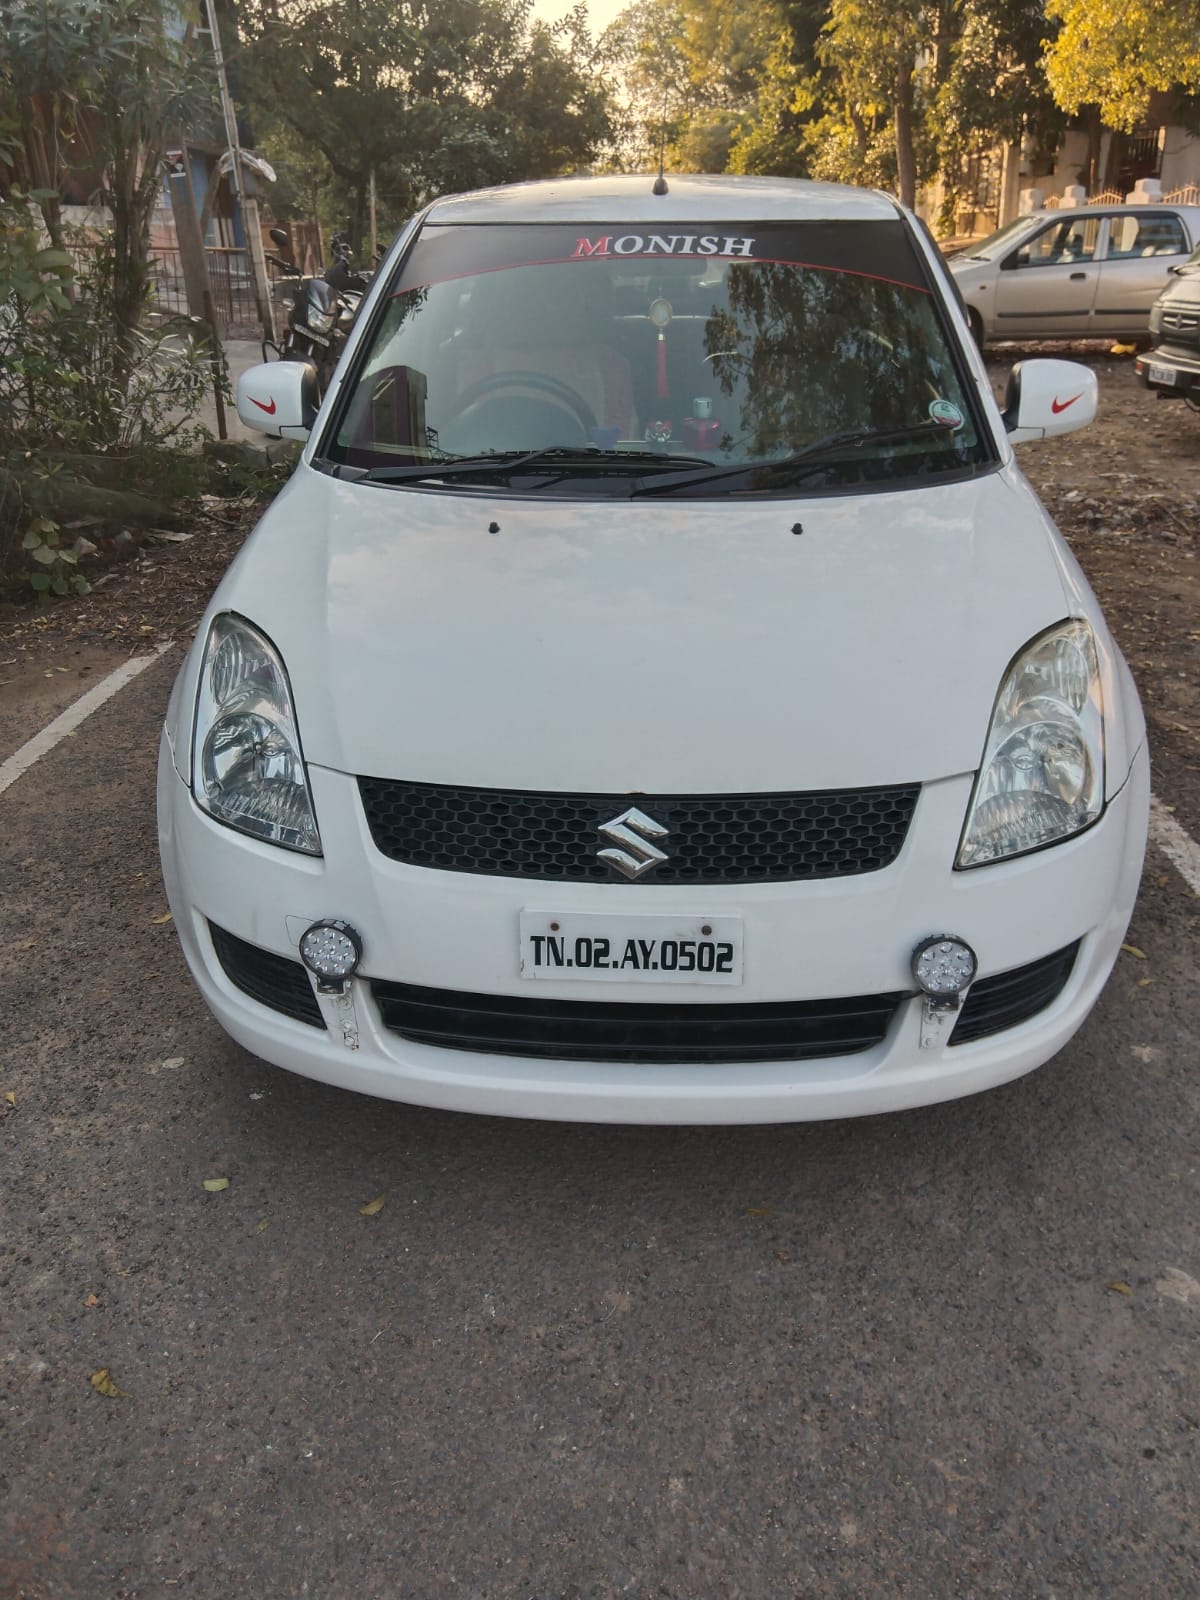 5996-for-sale-Maruthi-Suzuki-DZire-Diesel-Third-Owner-2013-TN-registered-rs-310000